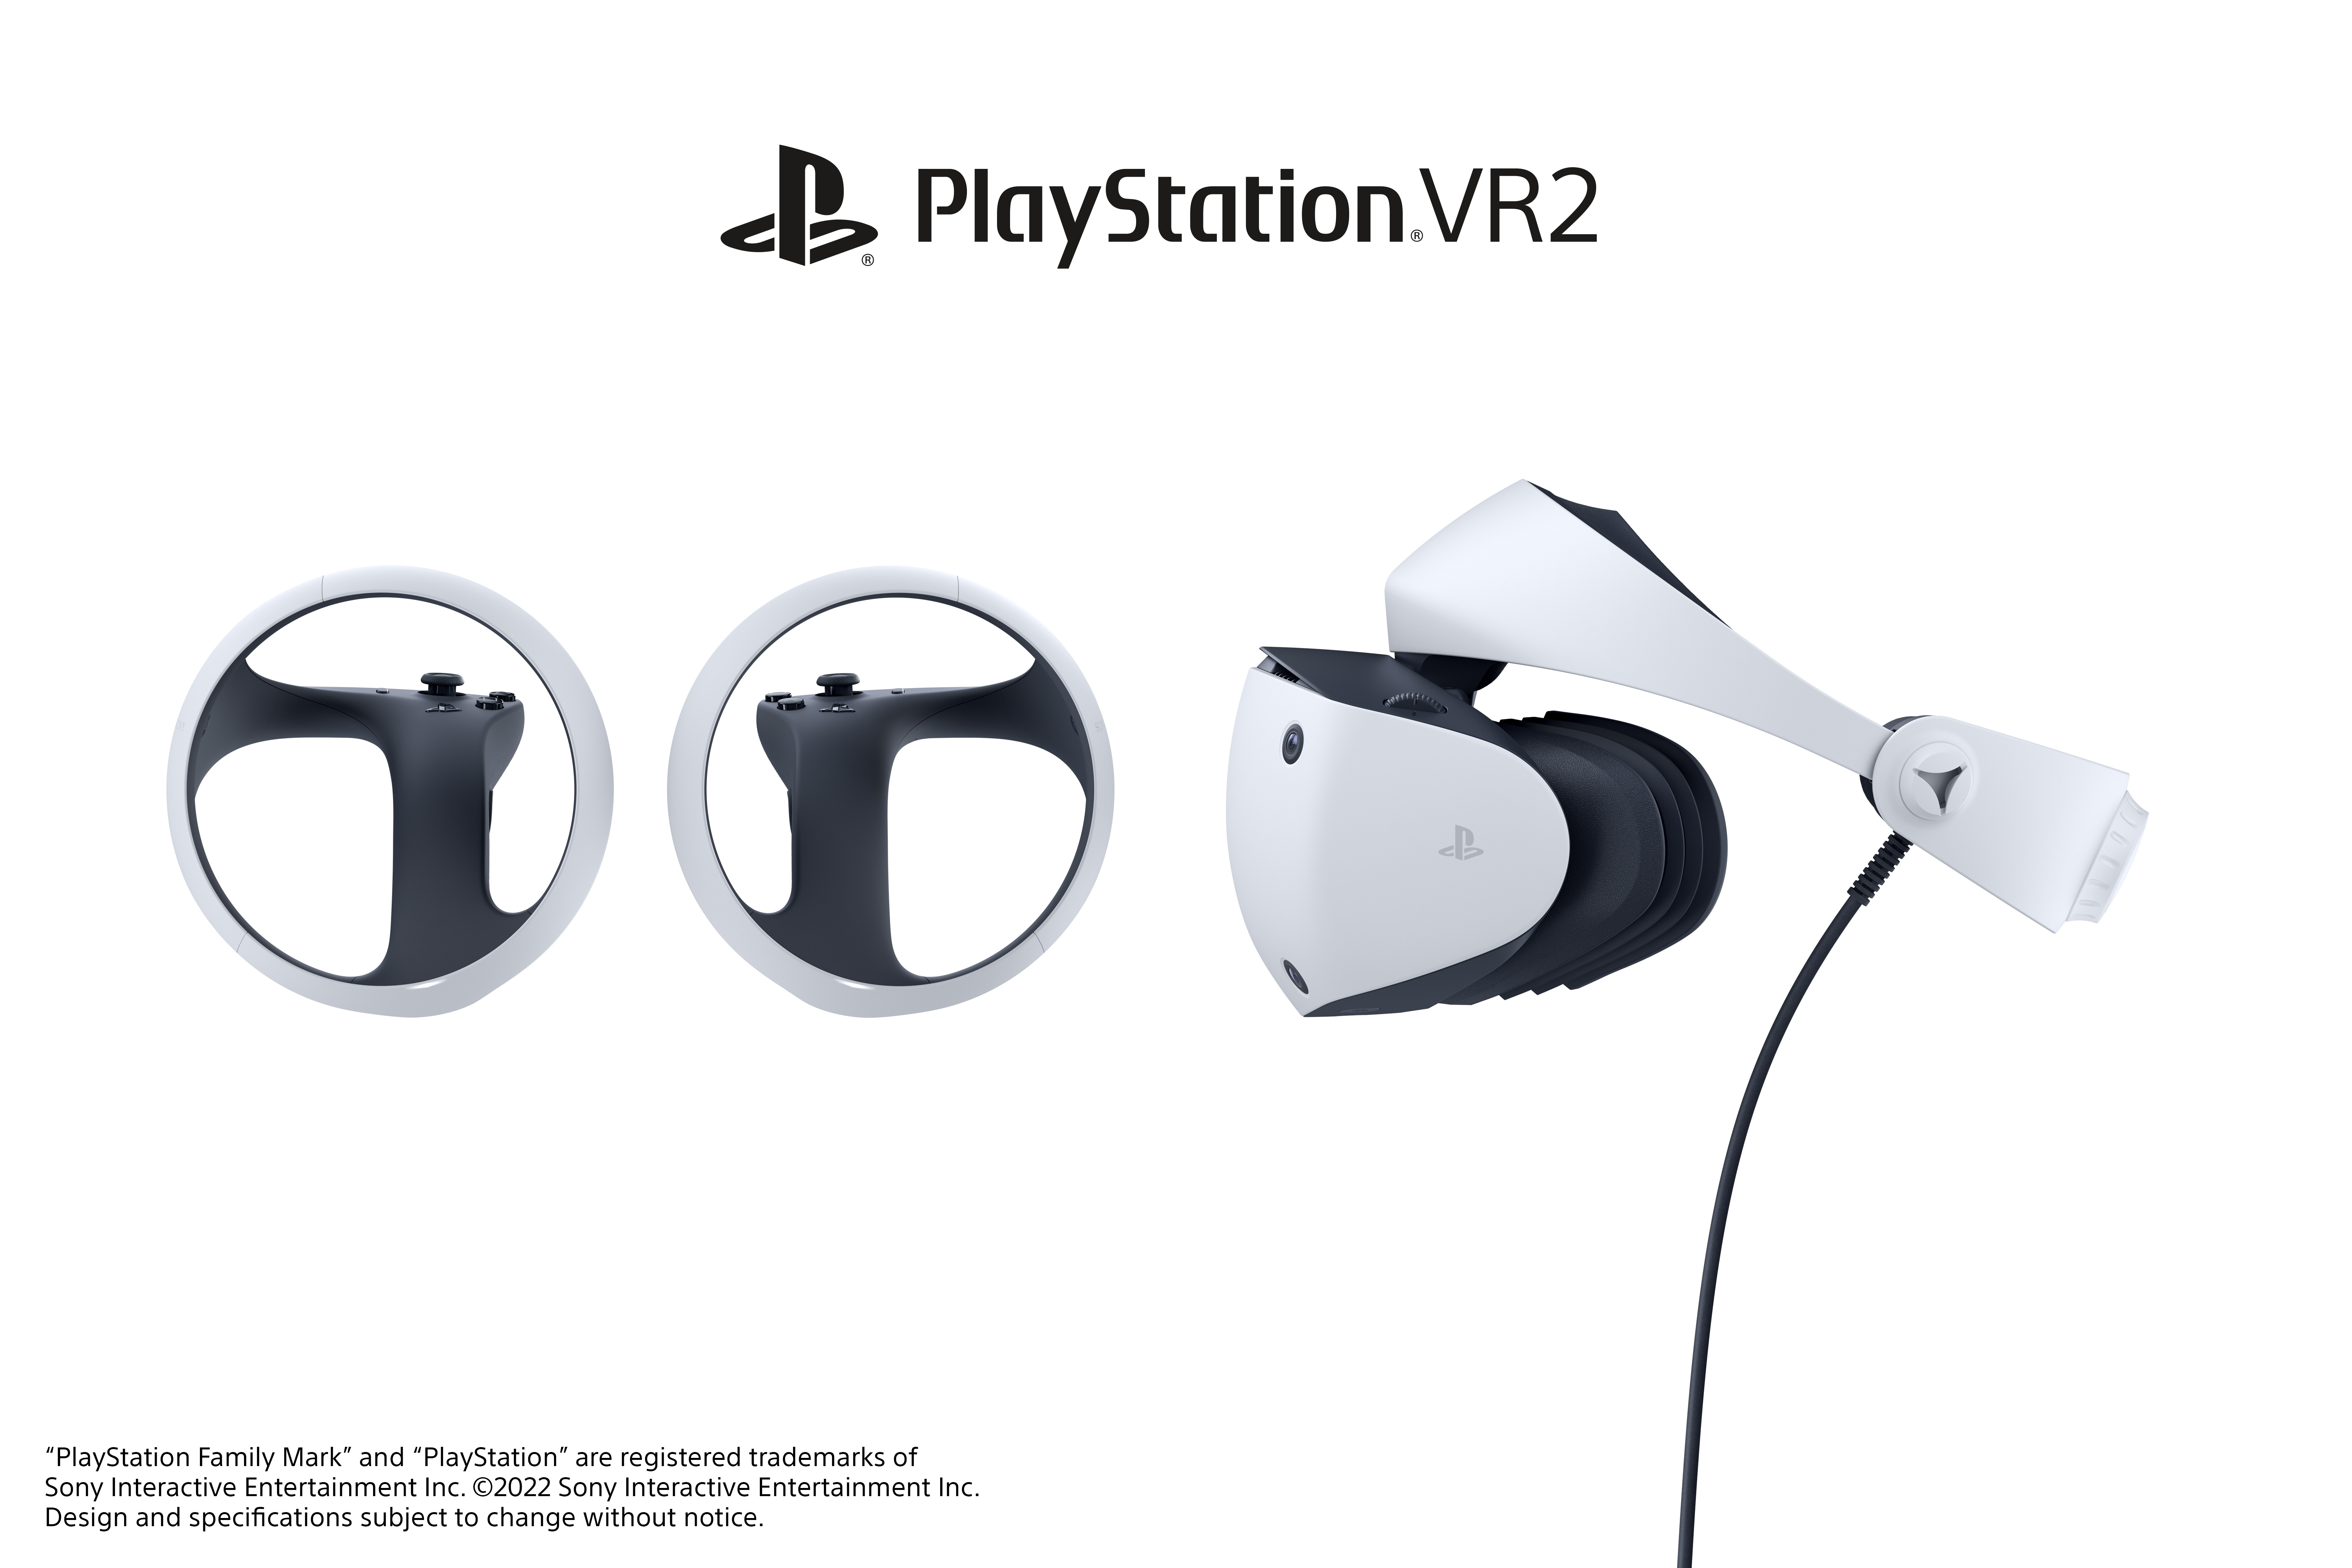 PS5 新一代VR 裝置「PlayStation VR2」確定將於2023 年初上市- 巴哈姆特